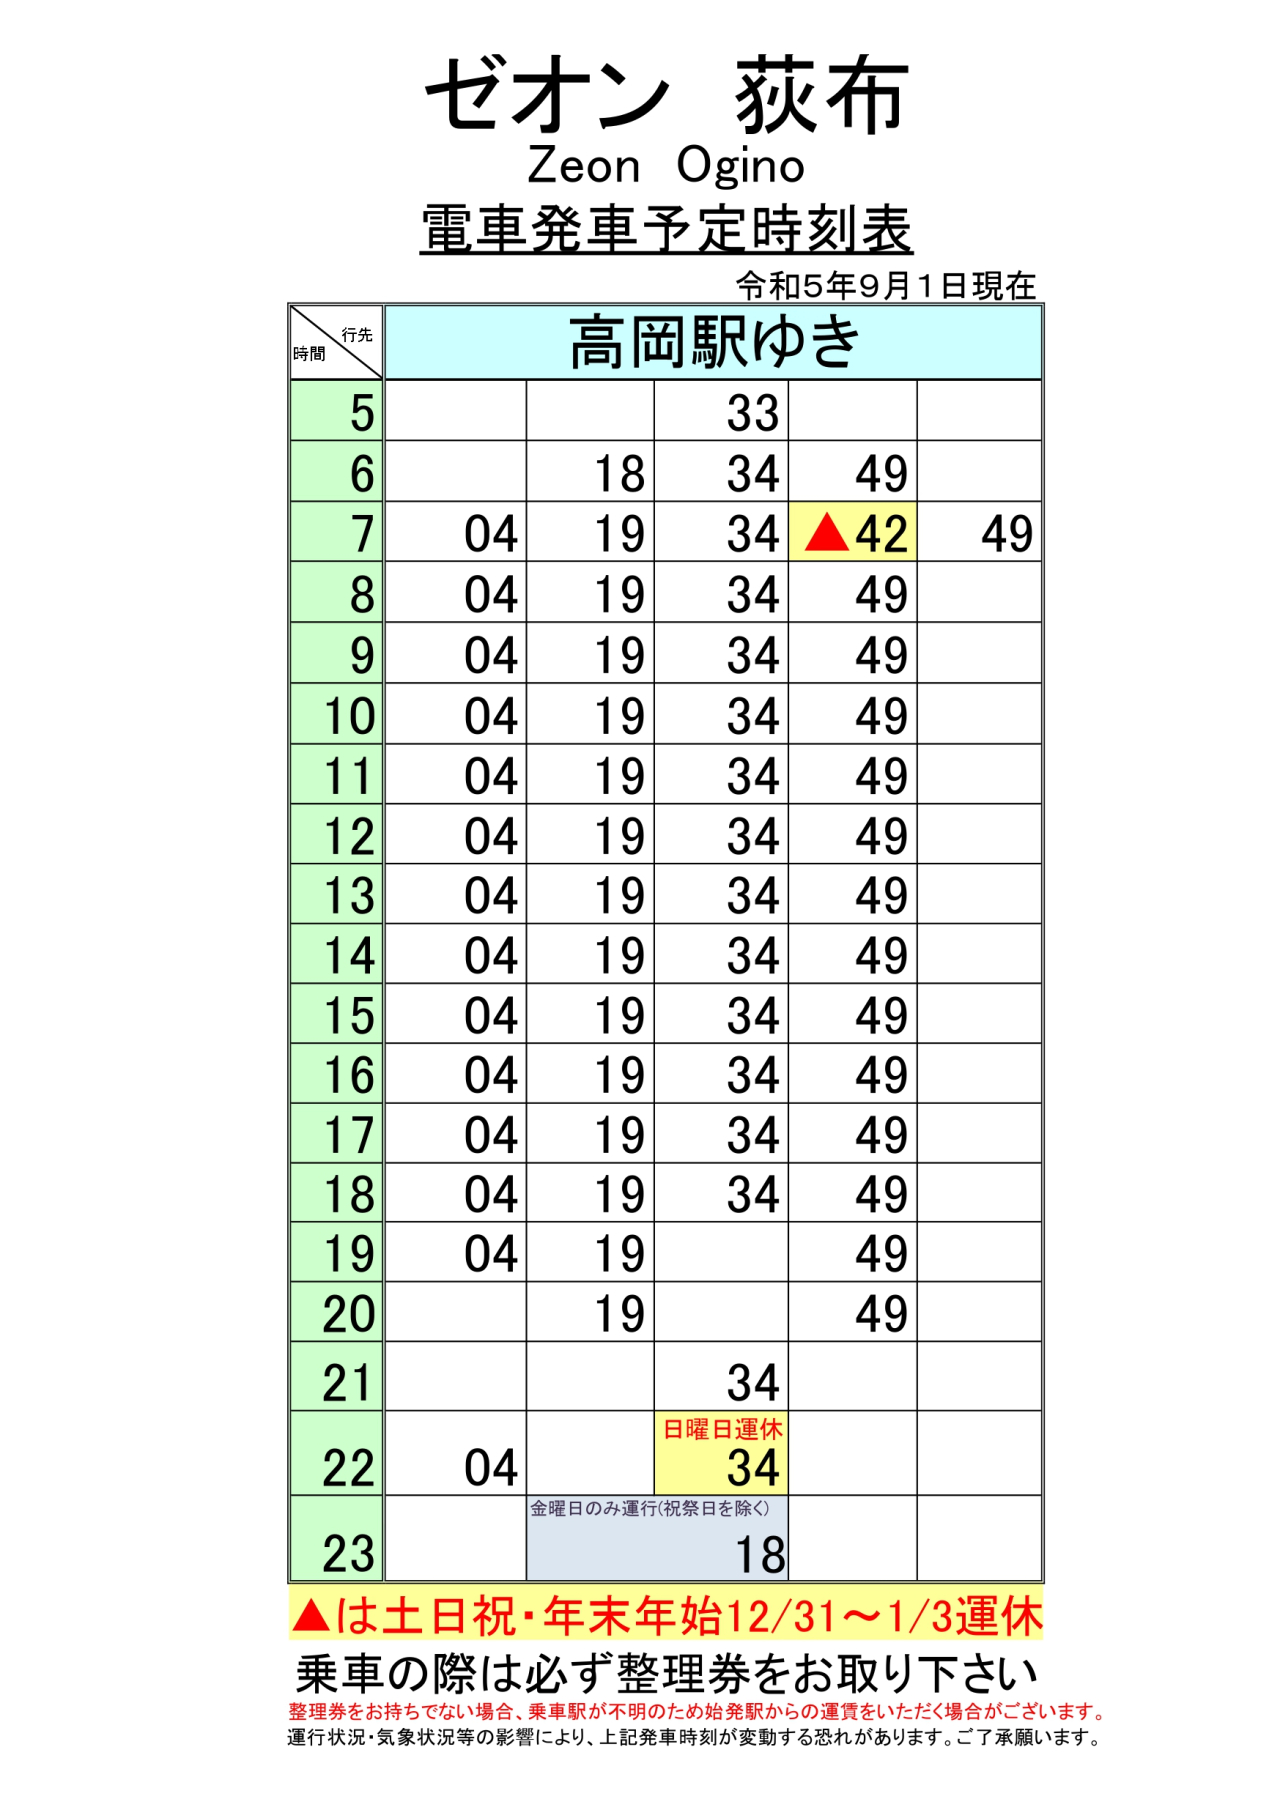 最新5.5.1改正各駅時刻表(全駅)_page-0001 (3)